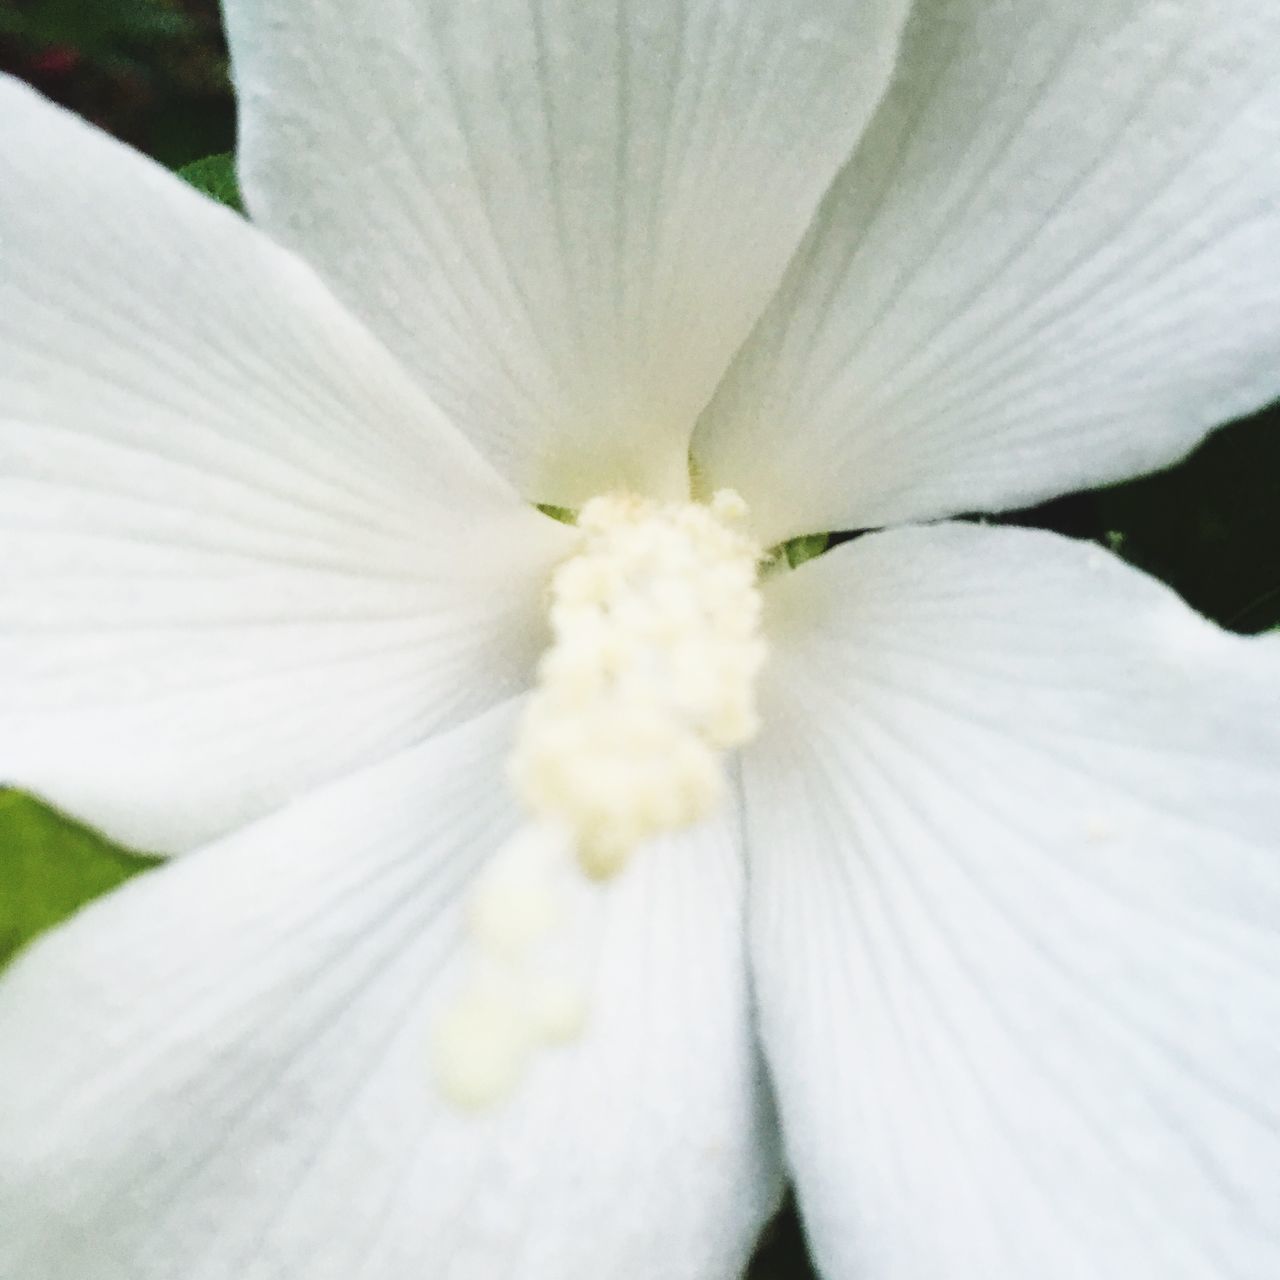 MACRO SHOT OF WHITE HIBISCUS FLOWER